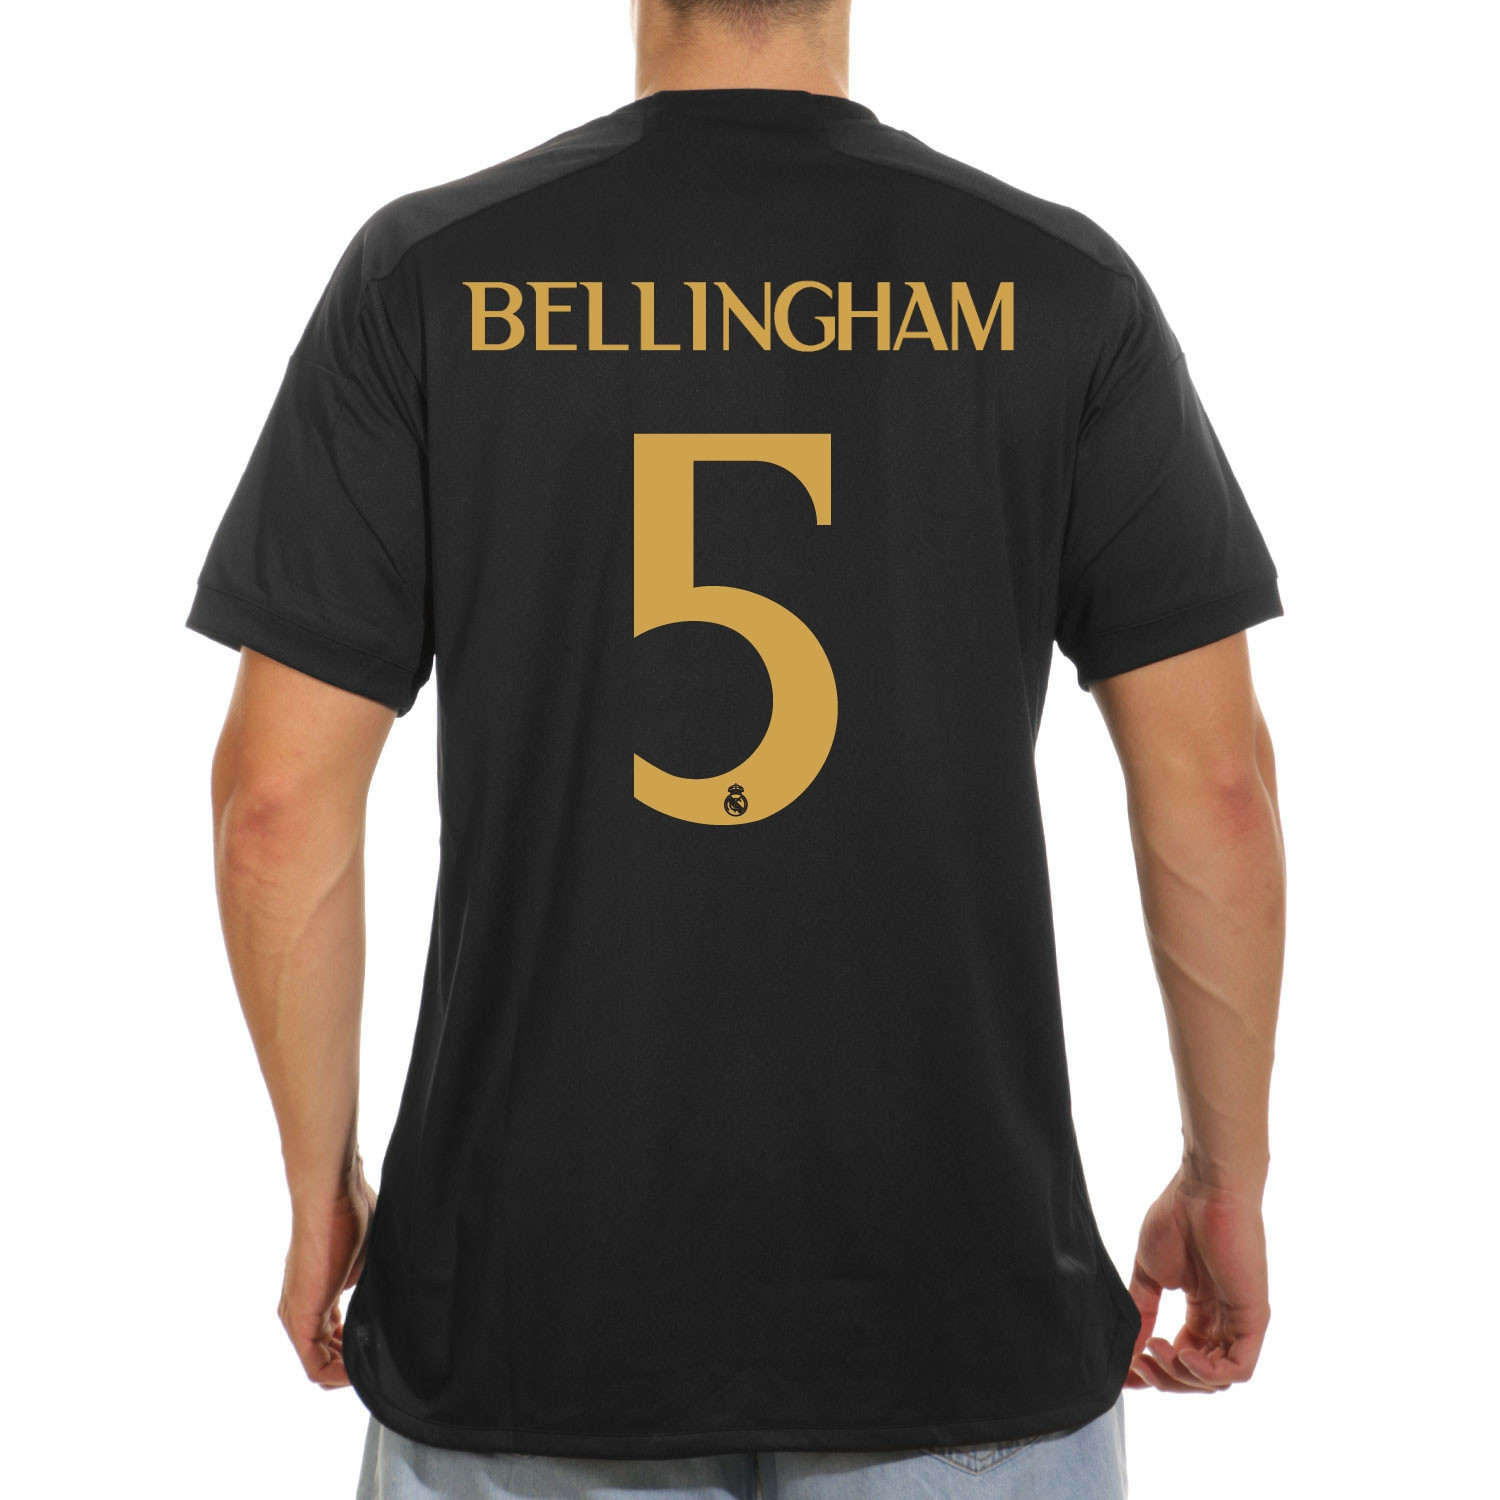 Camiseta adidas Real Madrid niño Bellingham 23-24